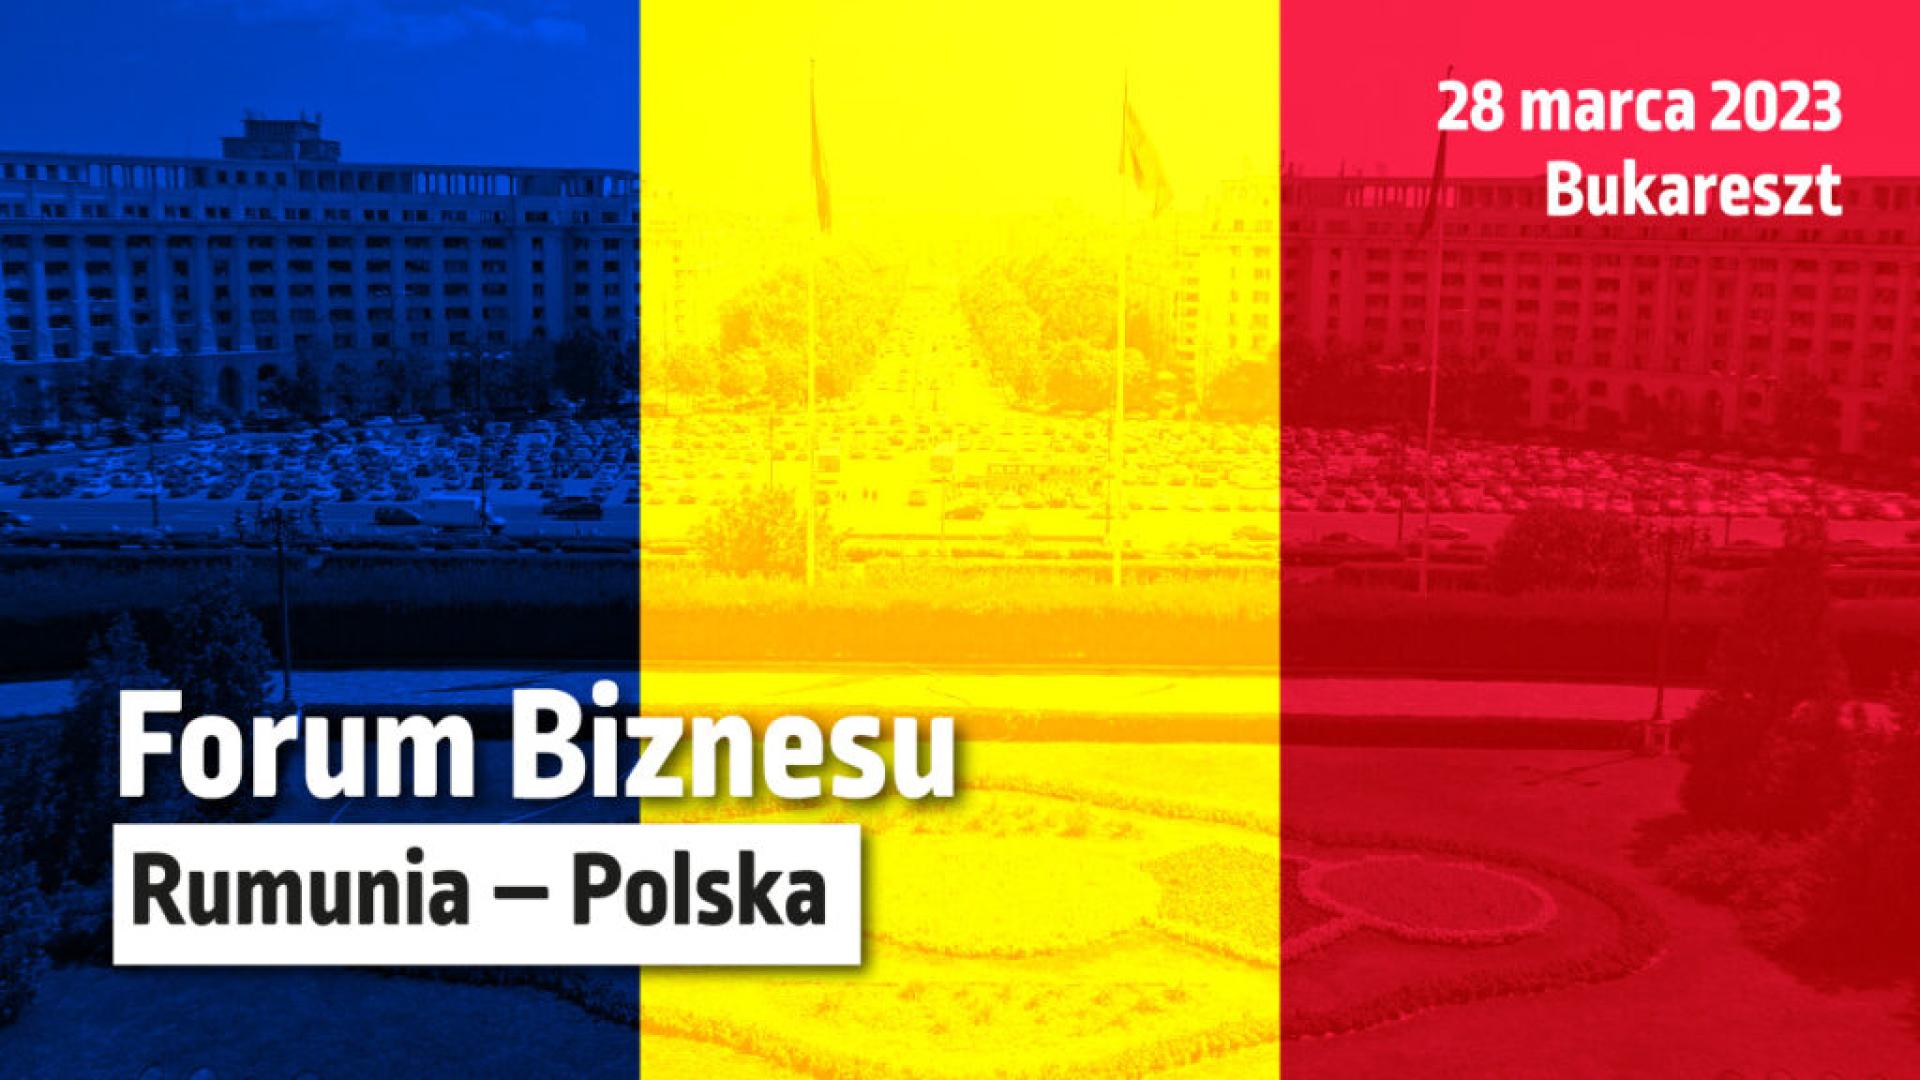 Polskie Forum Biznesu, Bukareszt, 28 